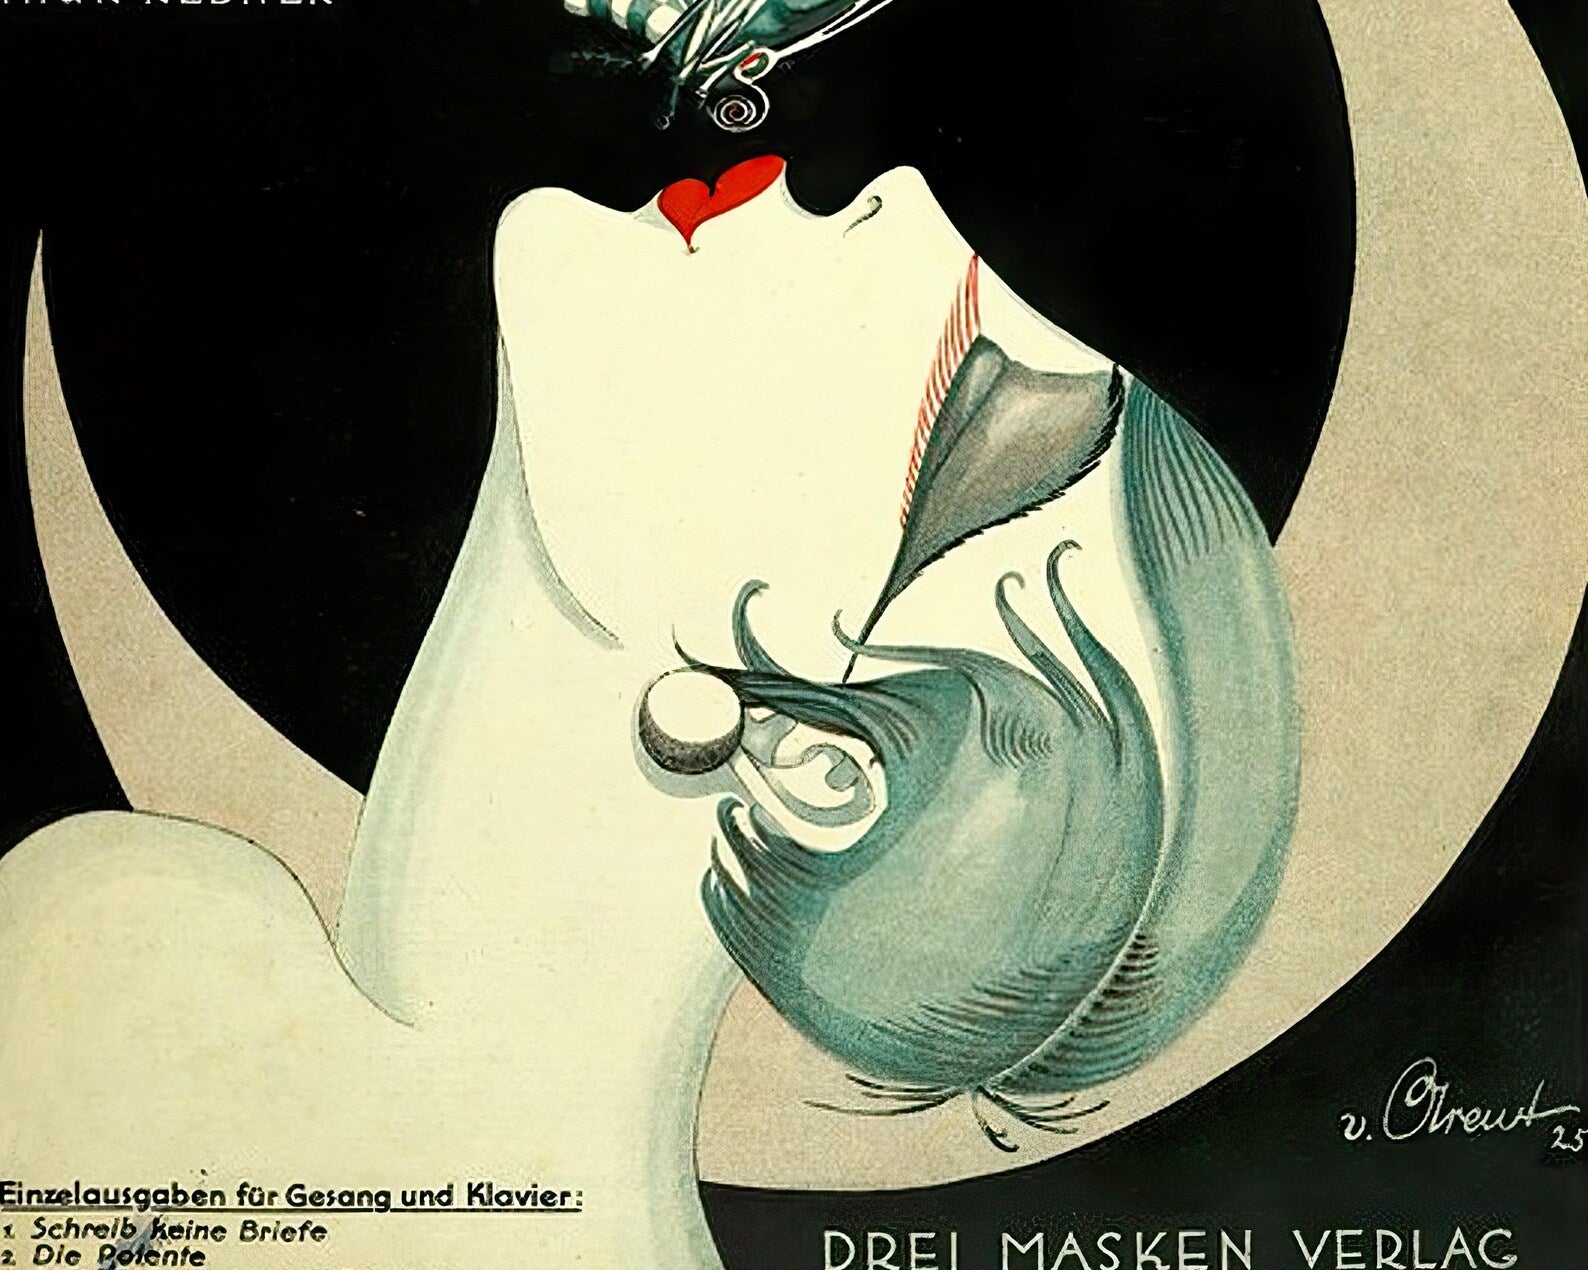 Vintage Sheet Music Cover "Die Nacht der Nächte" (c.1925) Art Deco - Mabon Gallery